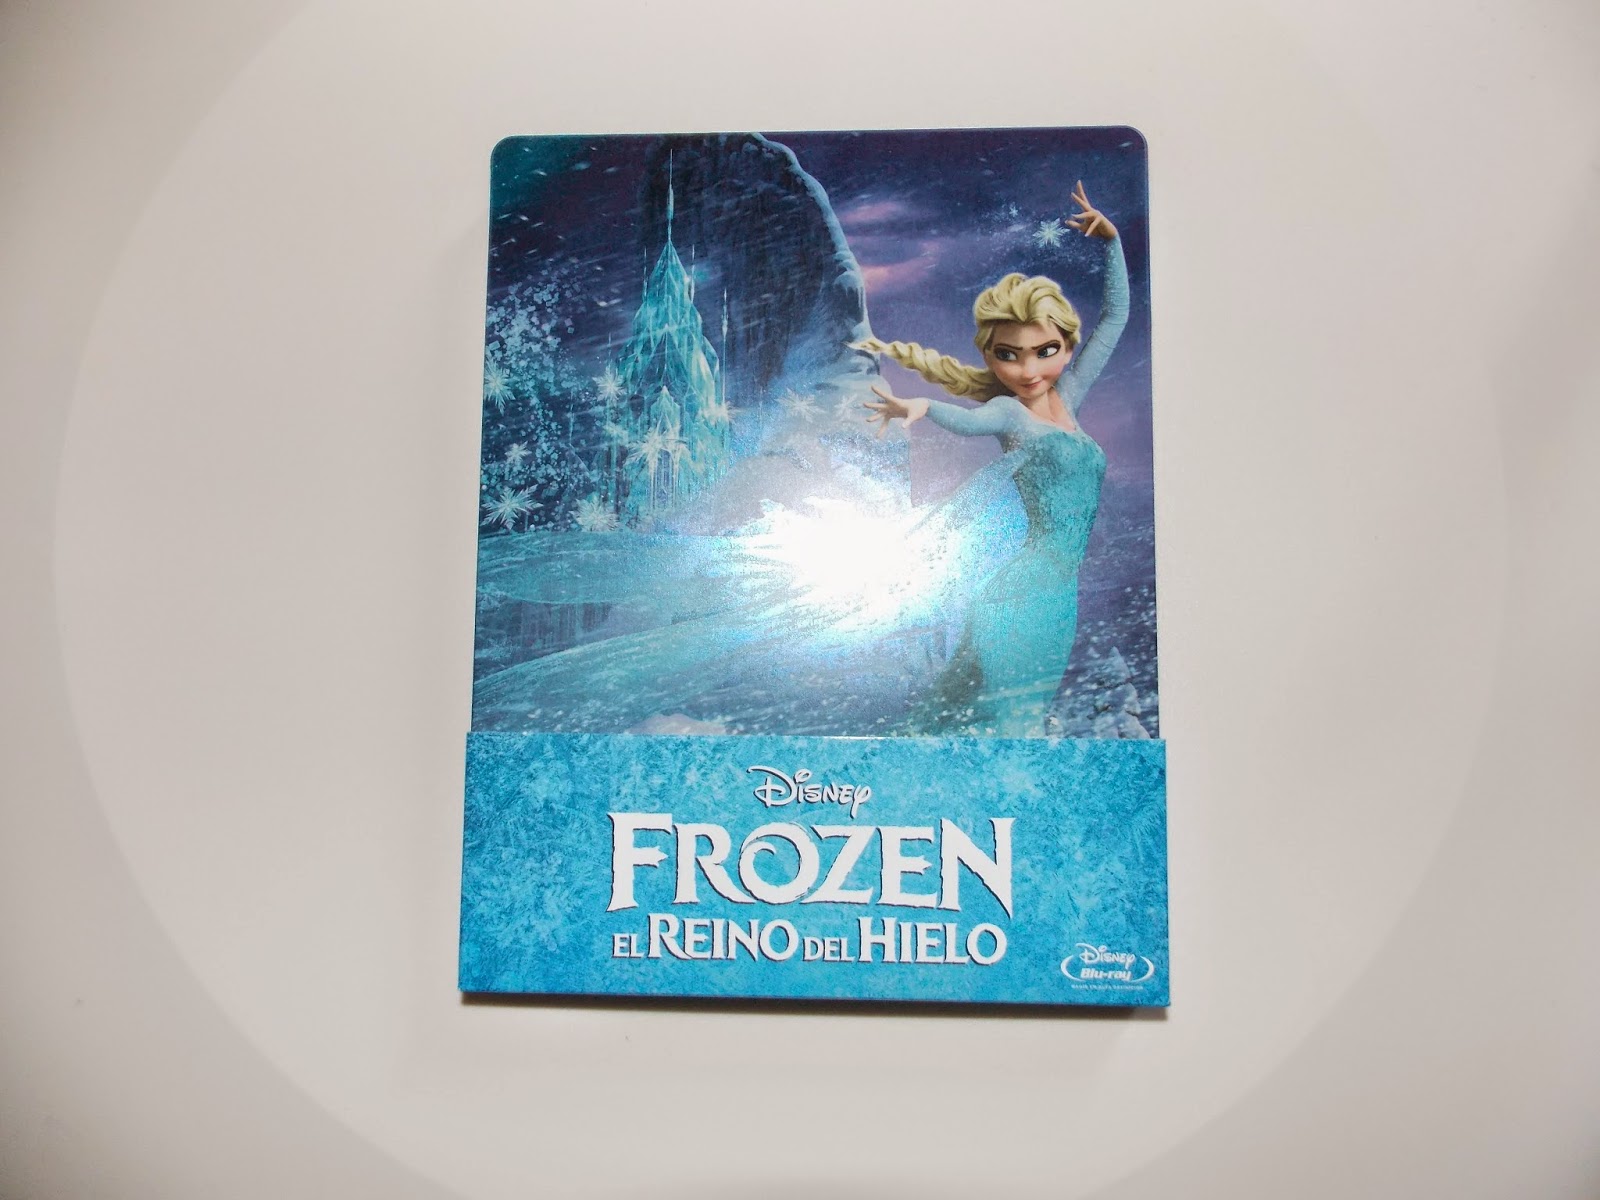 disney-frozen-el-reino-del-hielo-una-aventura-congelada-blu-ray-steelbook-metalica-edici%C3%B3n-elsa-anna-princess-olaf-kristoff-hans-2014-1.JPG